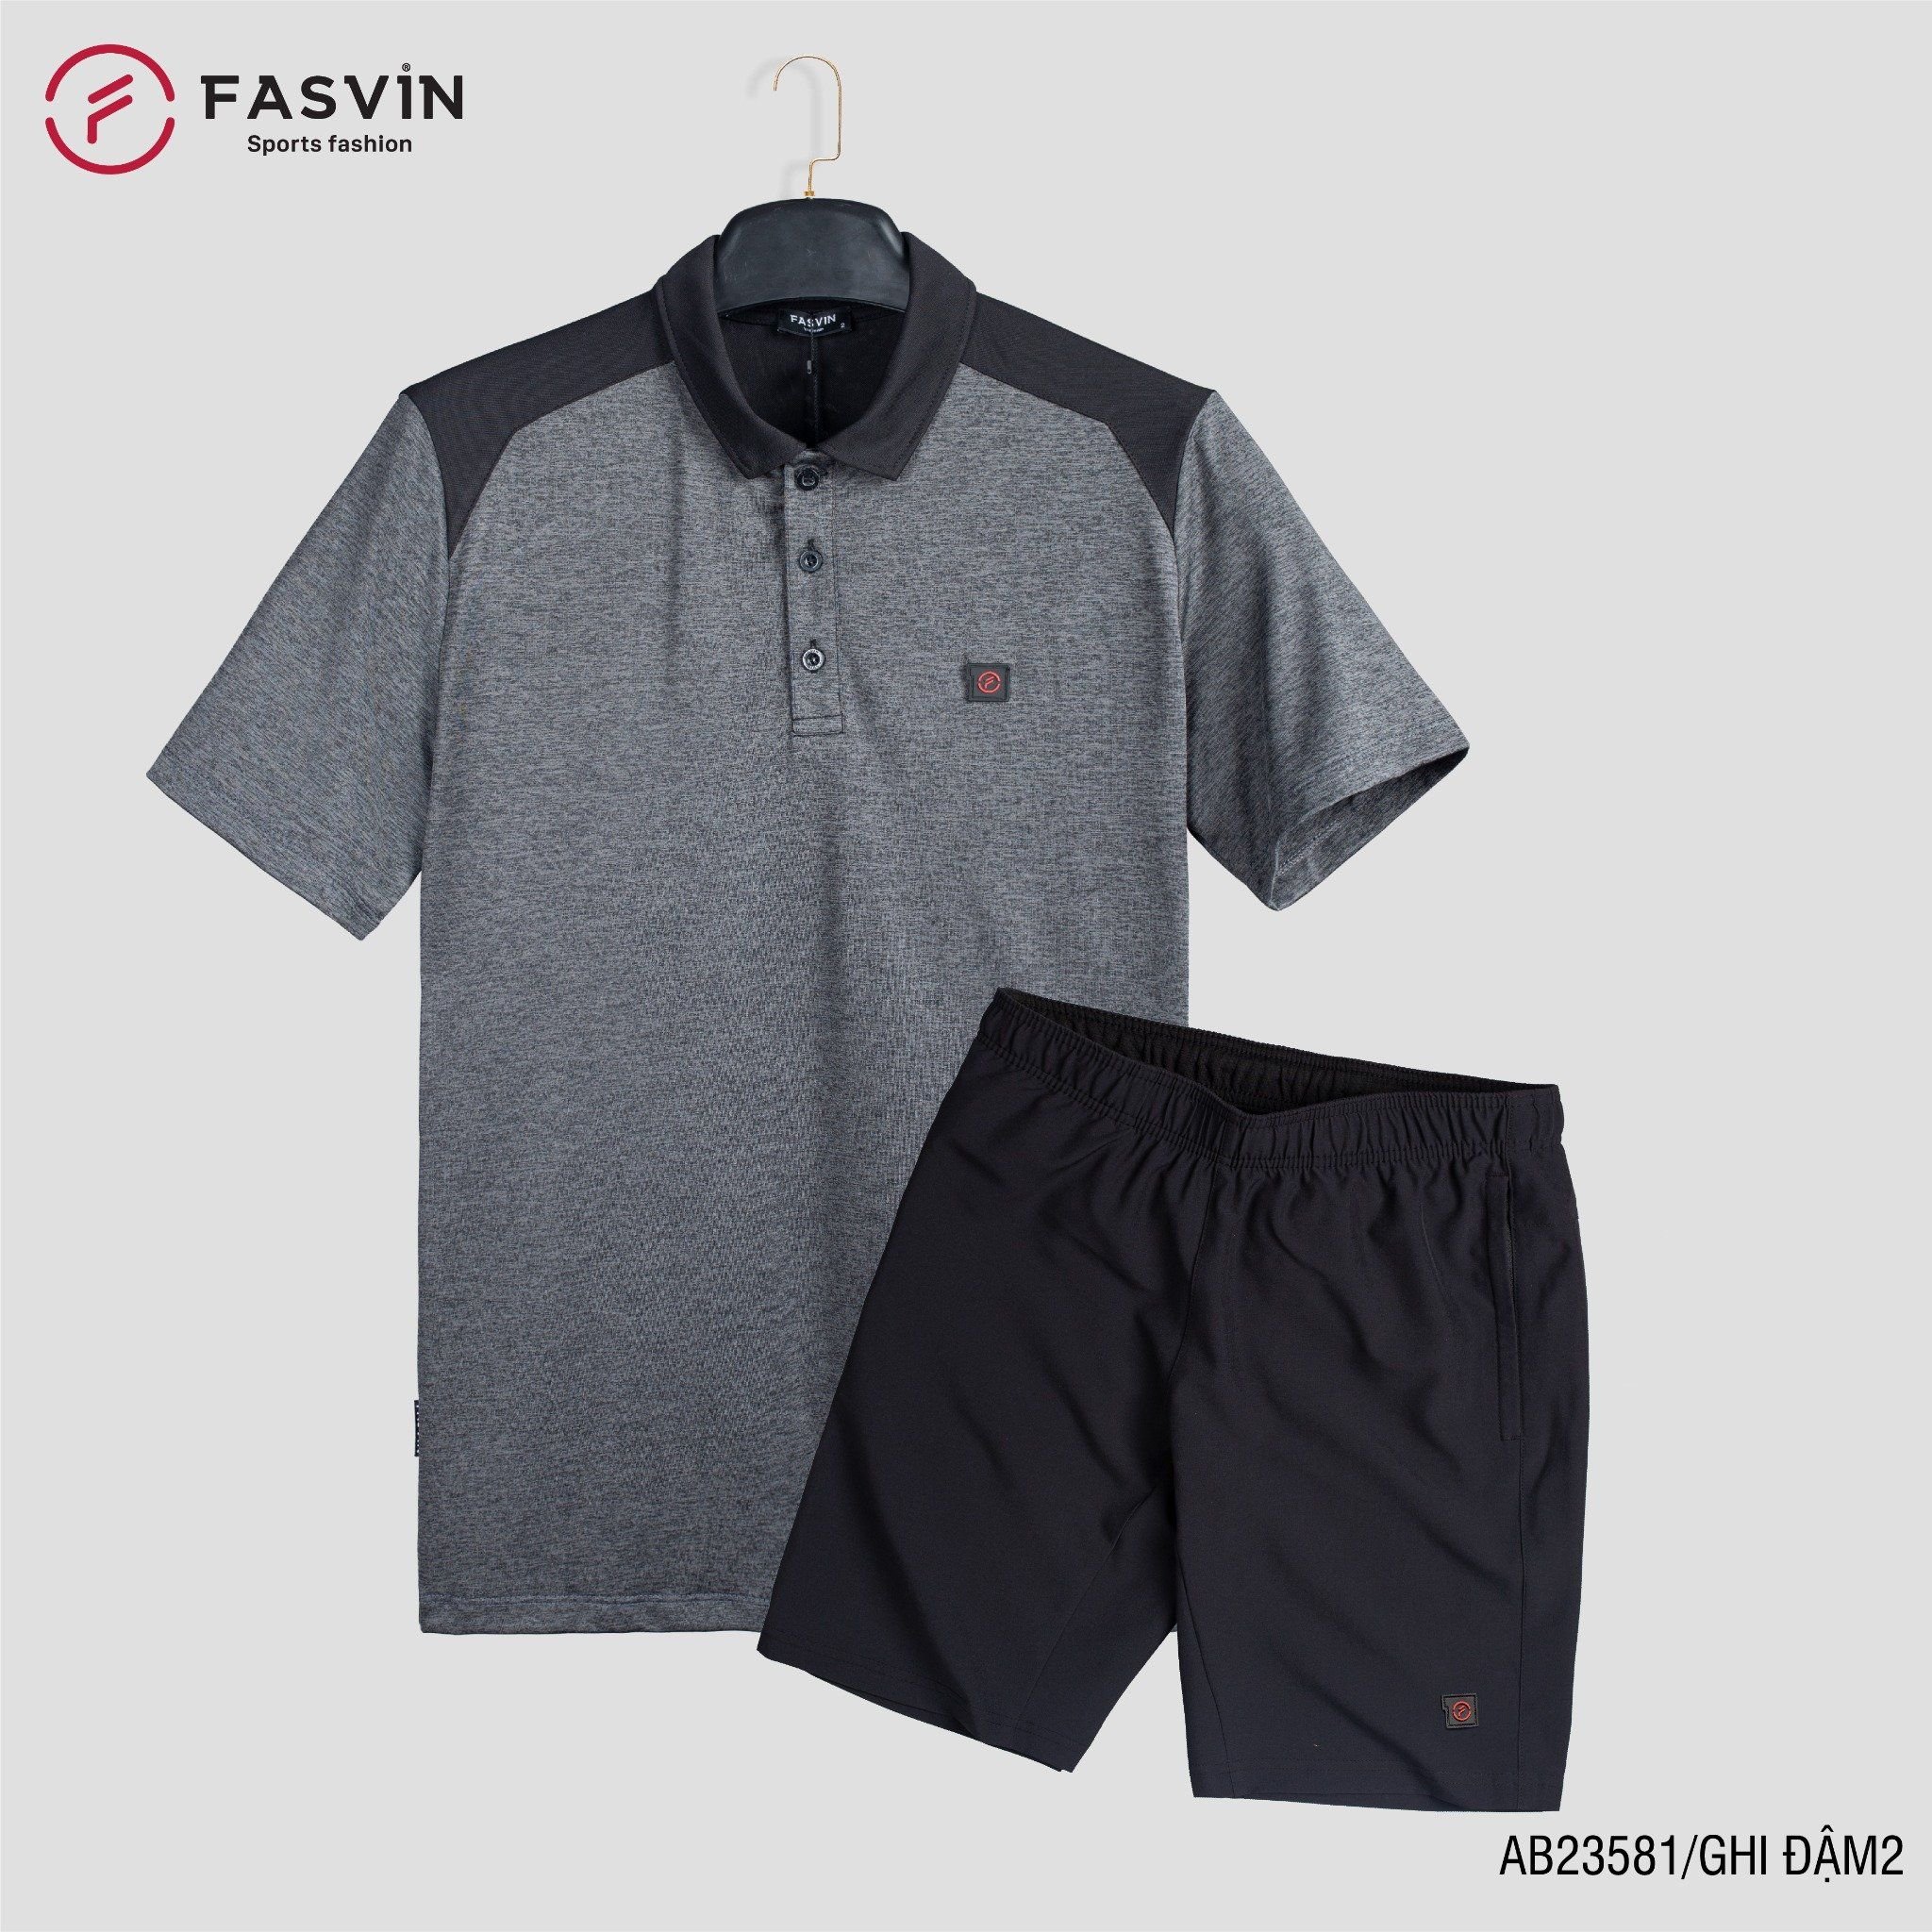  Bộ quần áo thể thao nam FASVIN AB23581 chất vải mềm nhẹ co giãn thoải mái 